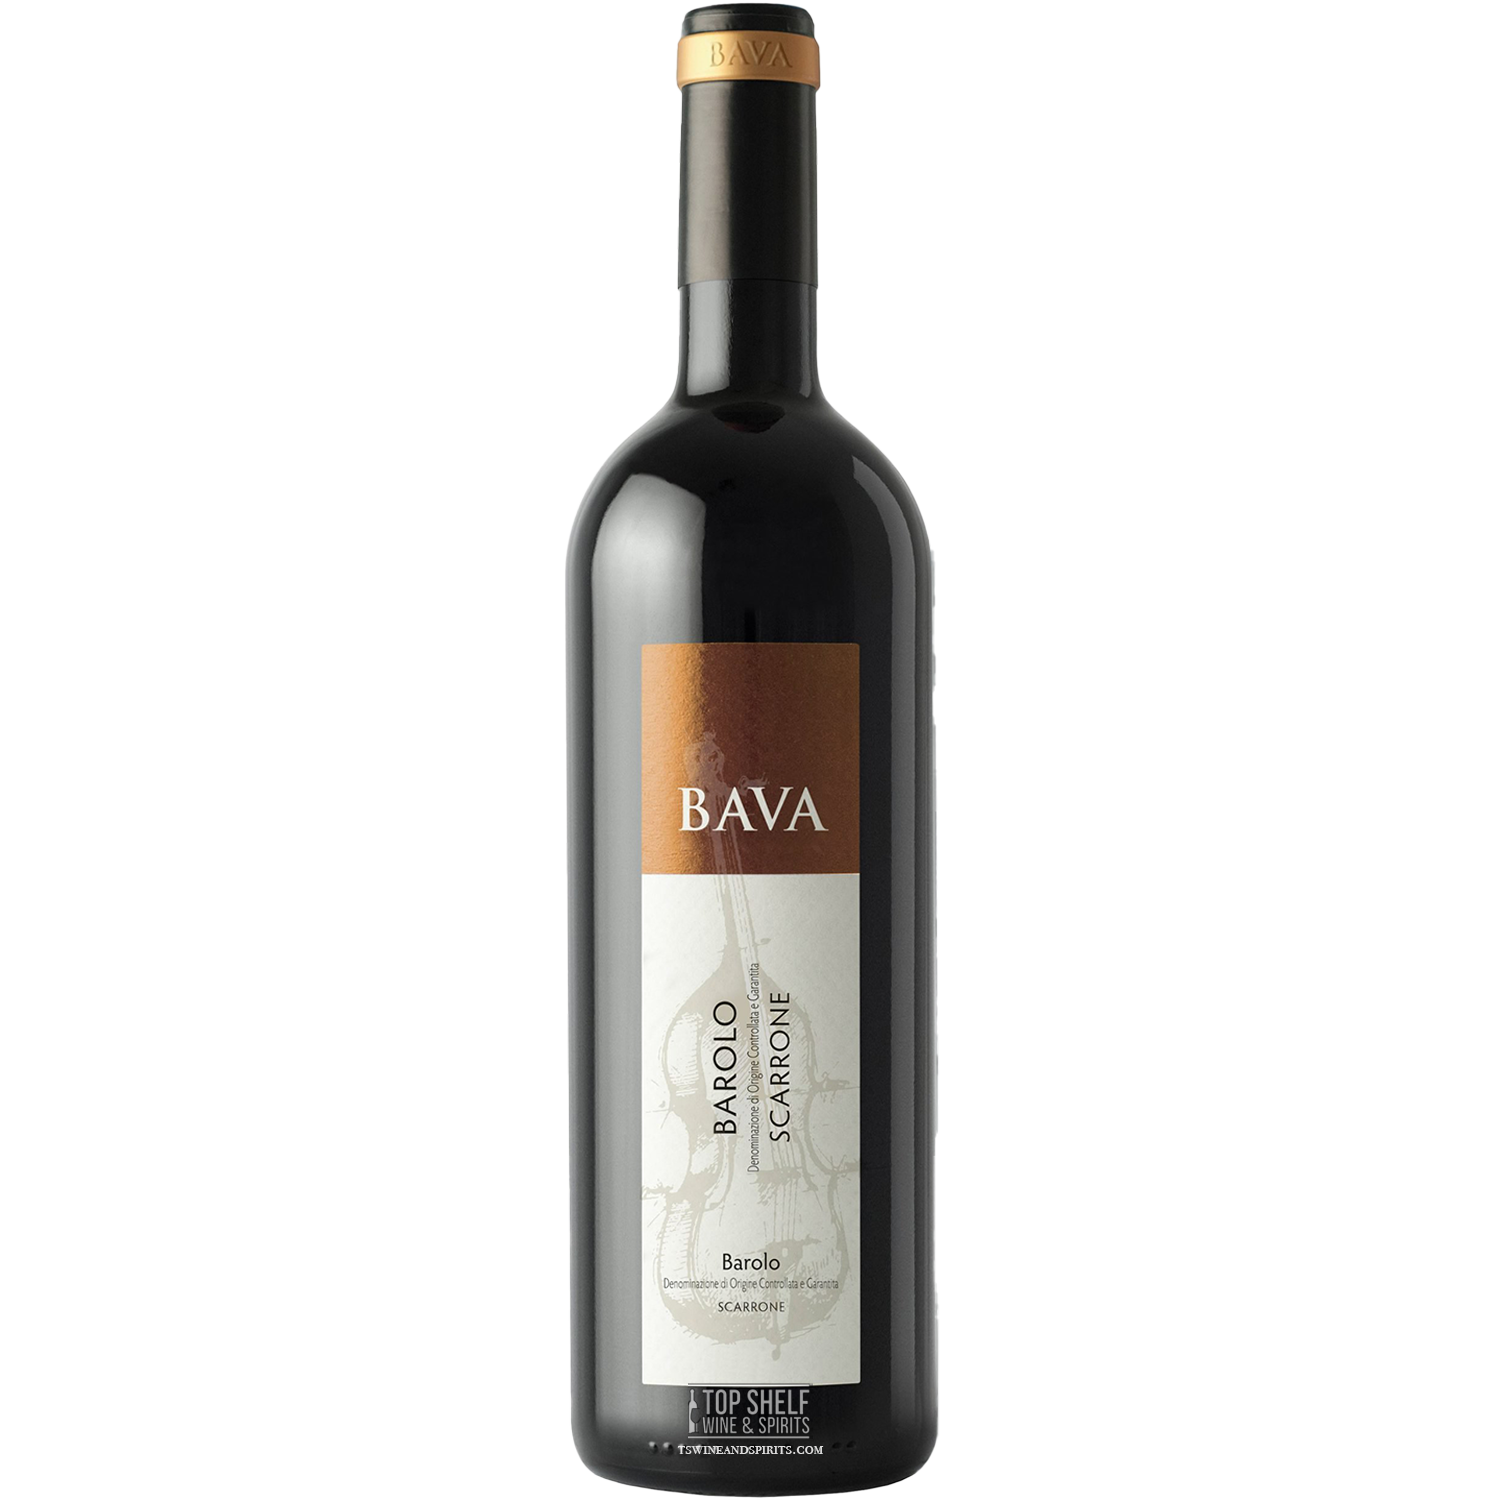 BAVA Barolo Scarrone 2015 Red Wine